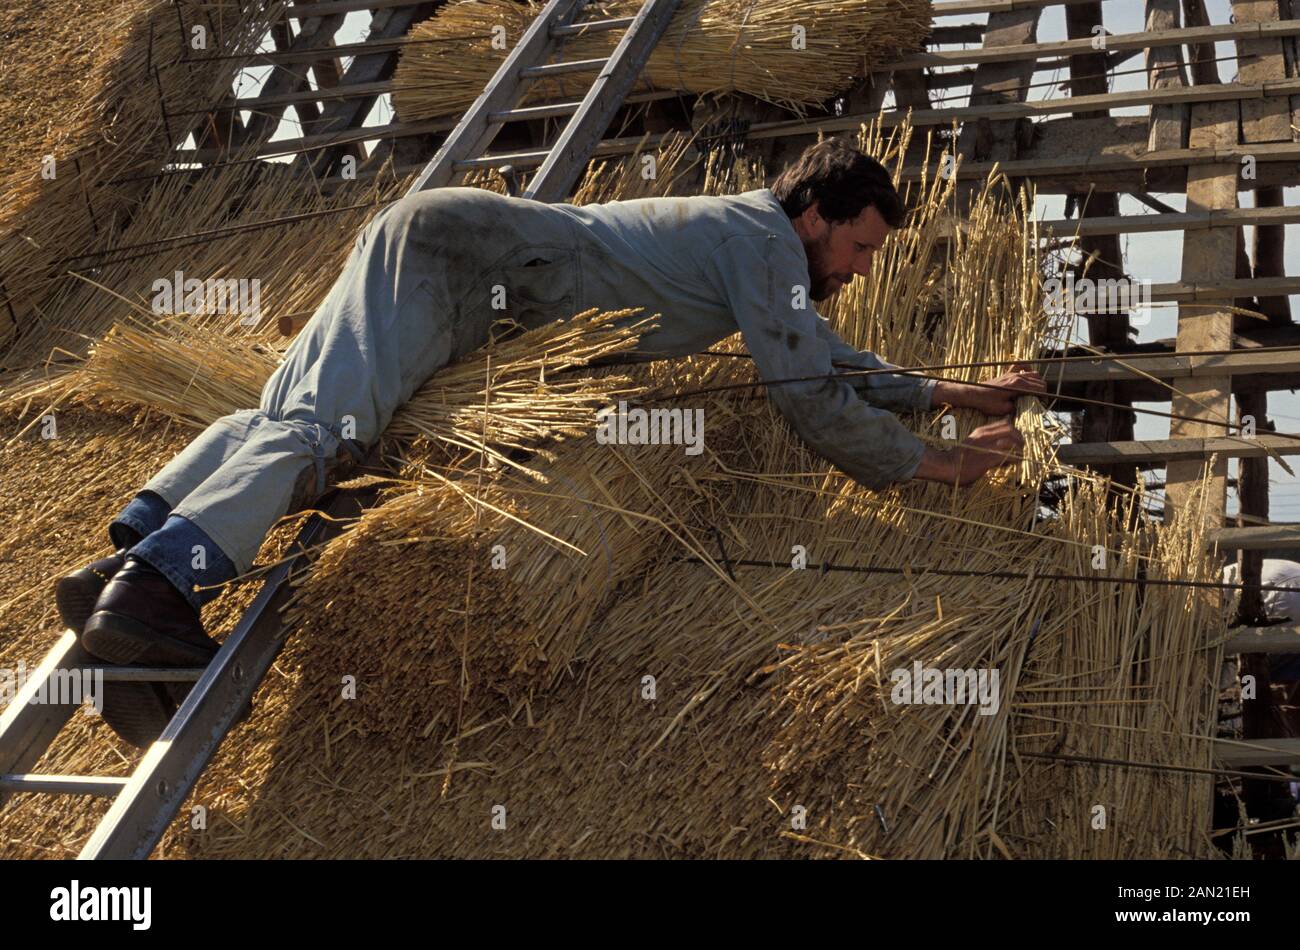 Bilanciando la larghezza della superficie del tetto, il 16th agosto 1993, a Suffolk, Inghilterra, un tradizionale thatcher posa un pettine d’acqua sul tetto di un cottage nel Suffolk. Utilizza un gancio Di Taglio per stendere la paglia nel rivestimento esterno resistente agli agenti atmosferici della pendenza del tetto. Utilizzando tecniche sviluppate nel corso di migliaia di anni, il buon paglia non richiederà frequenti manutenzione. In Inghilterra un crinale dura normalmente 10-15 anni. Thatching è il mestiere di costruire un tetto con vegetazione secca come paglia, canna d'acqua, macchia (Claudium mariscus), giunchi e erica, straticando la vegetazione in modo da a. Foto Stock